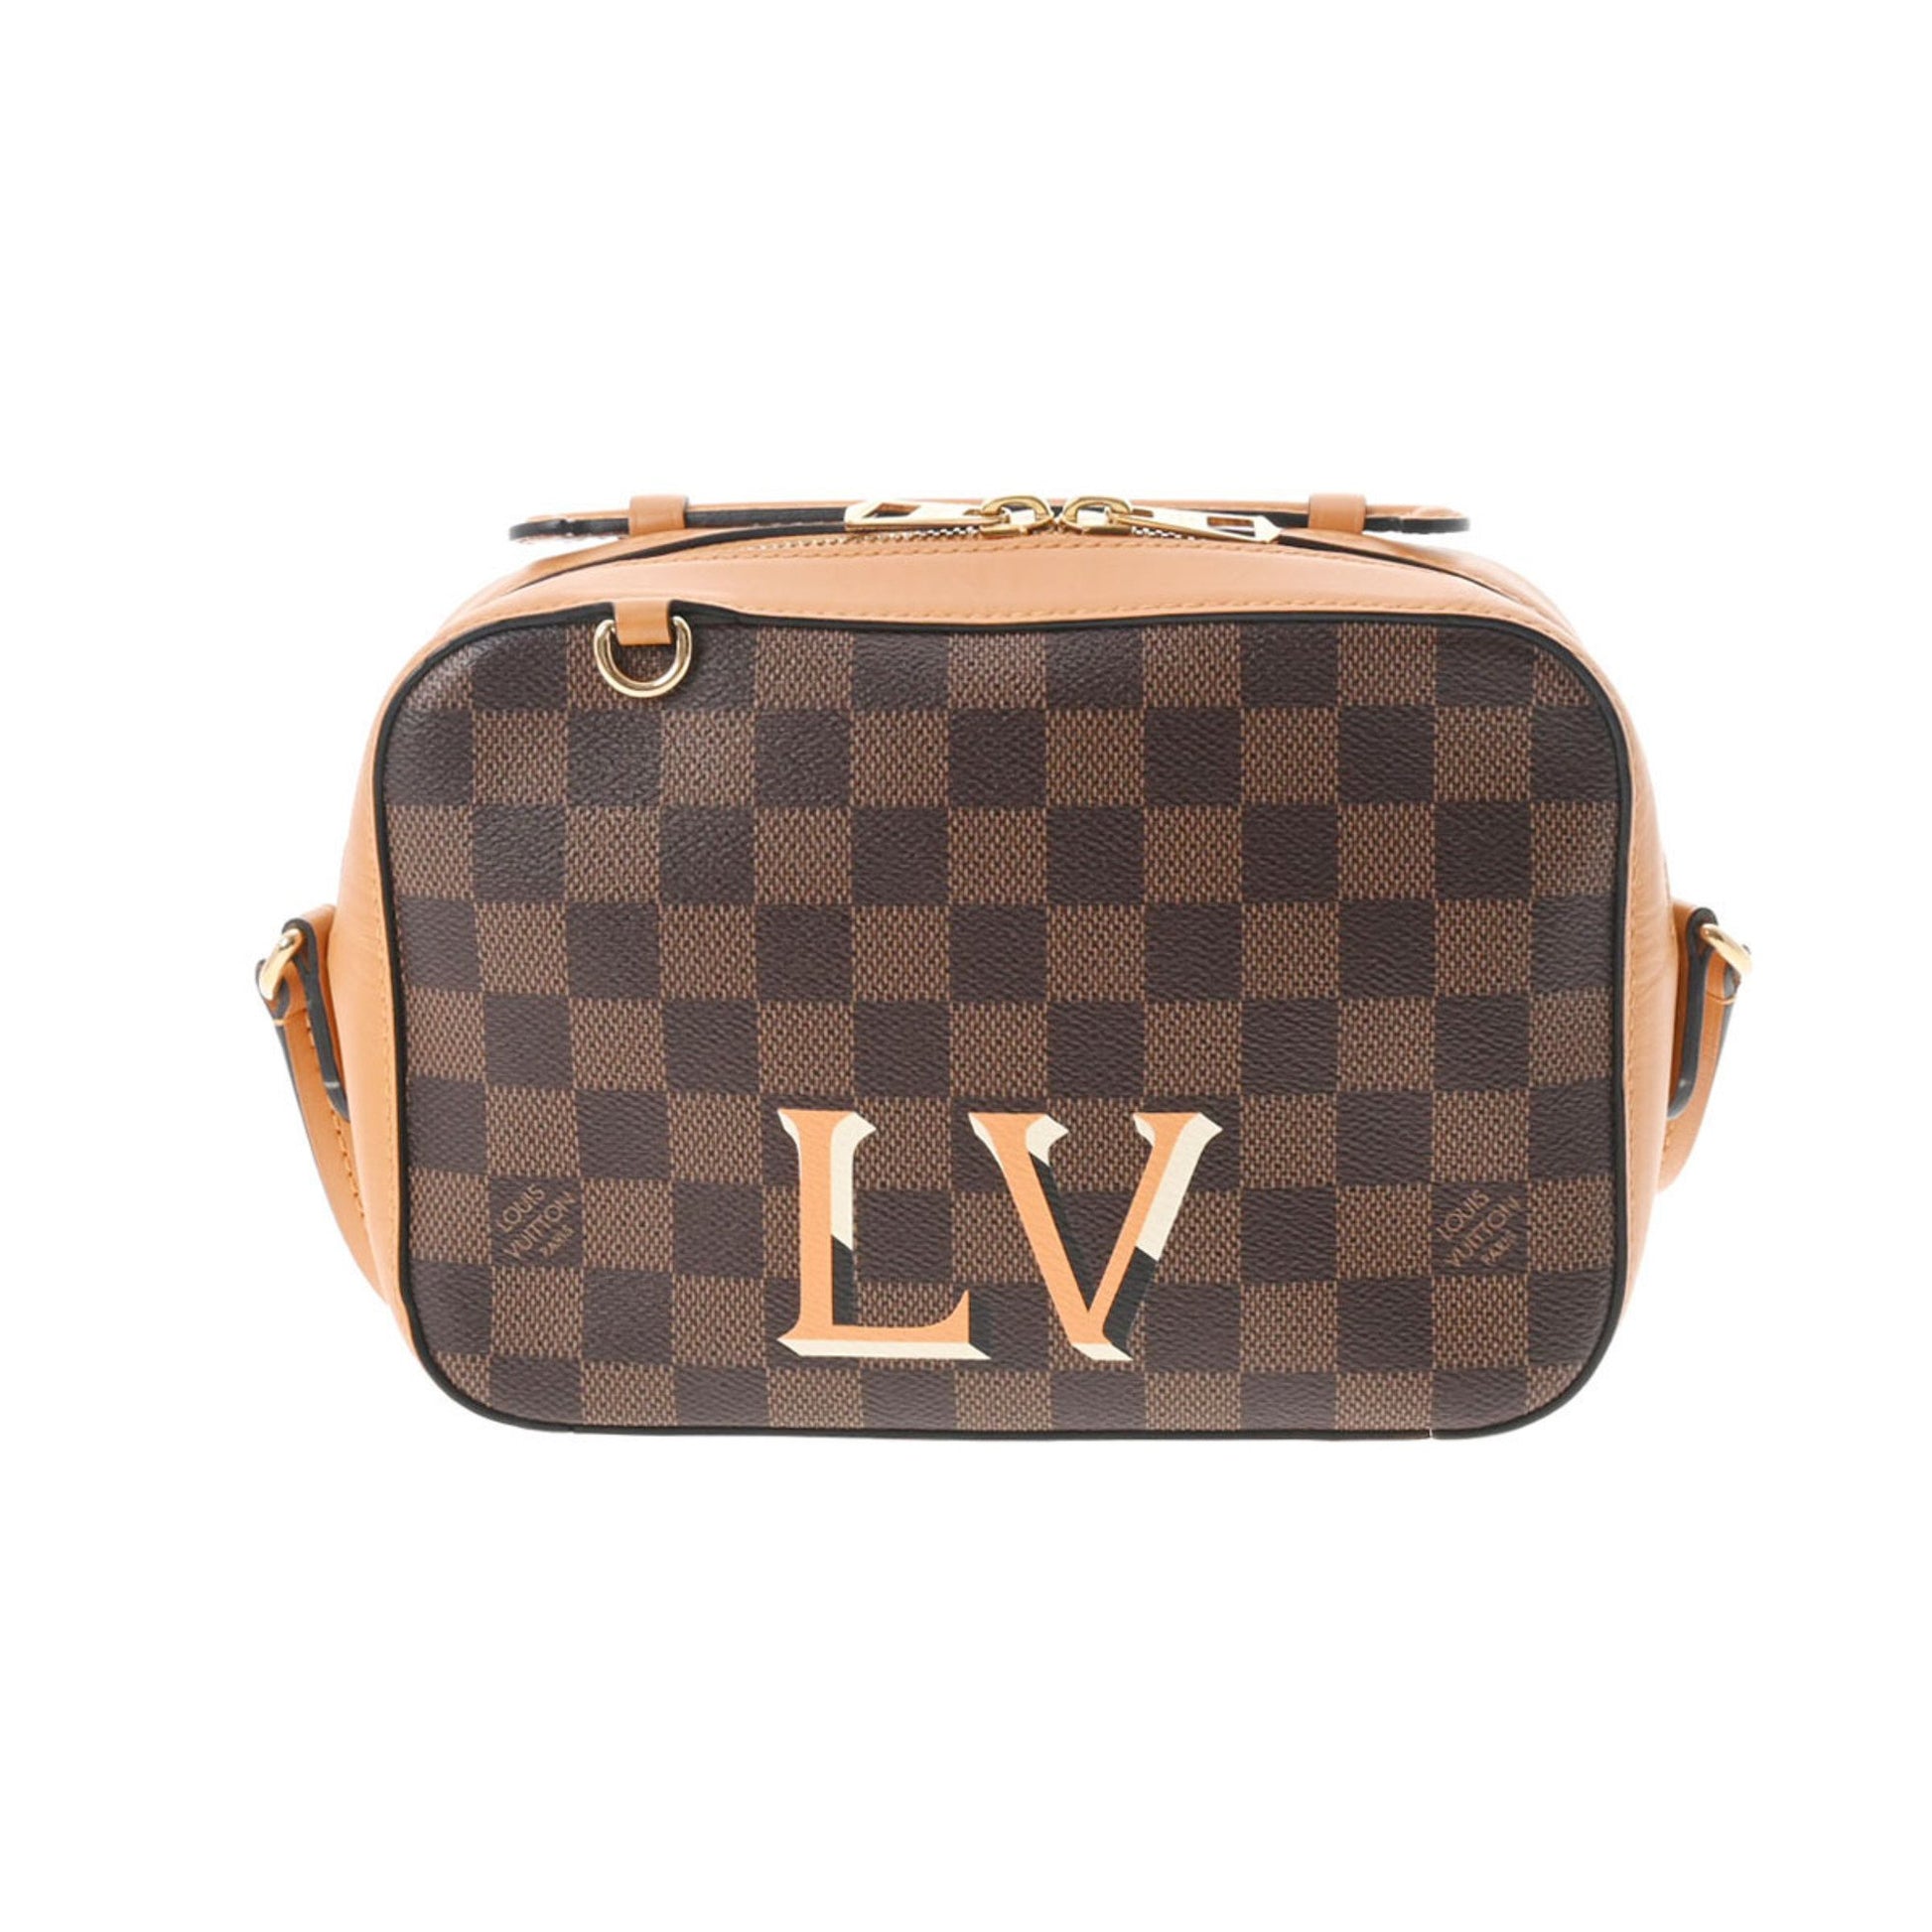 Louis Vuitton Chaine Nanogram Icons Bag Charm and Chain Gold